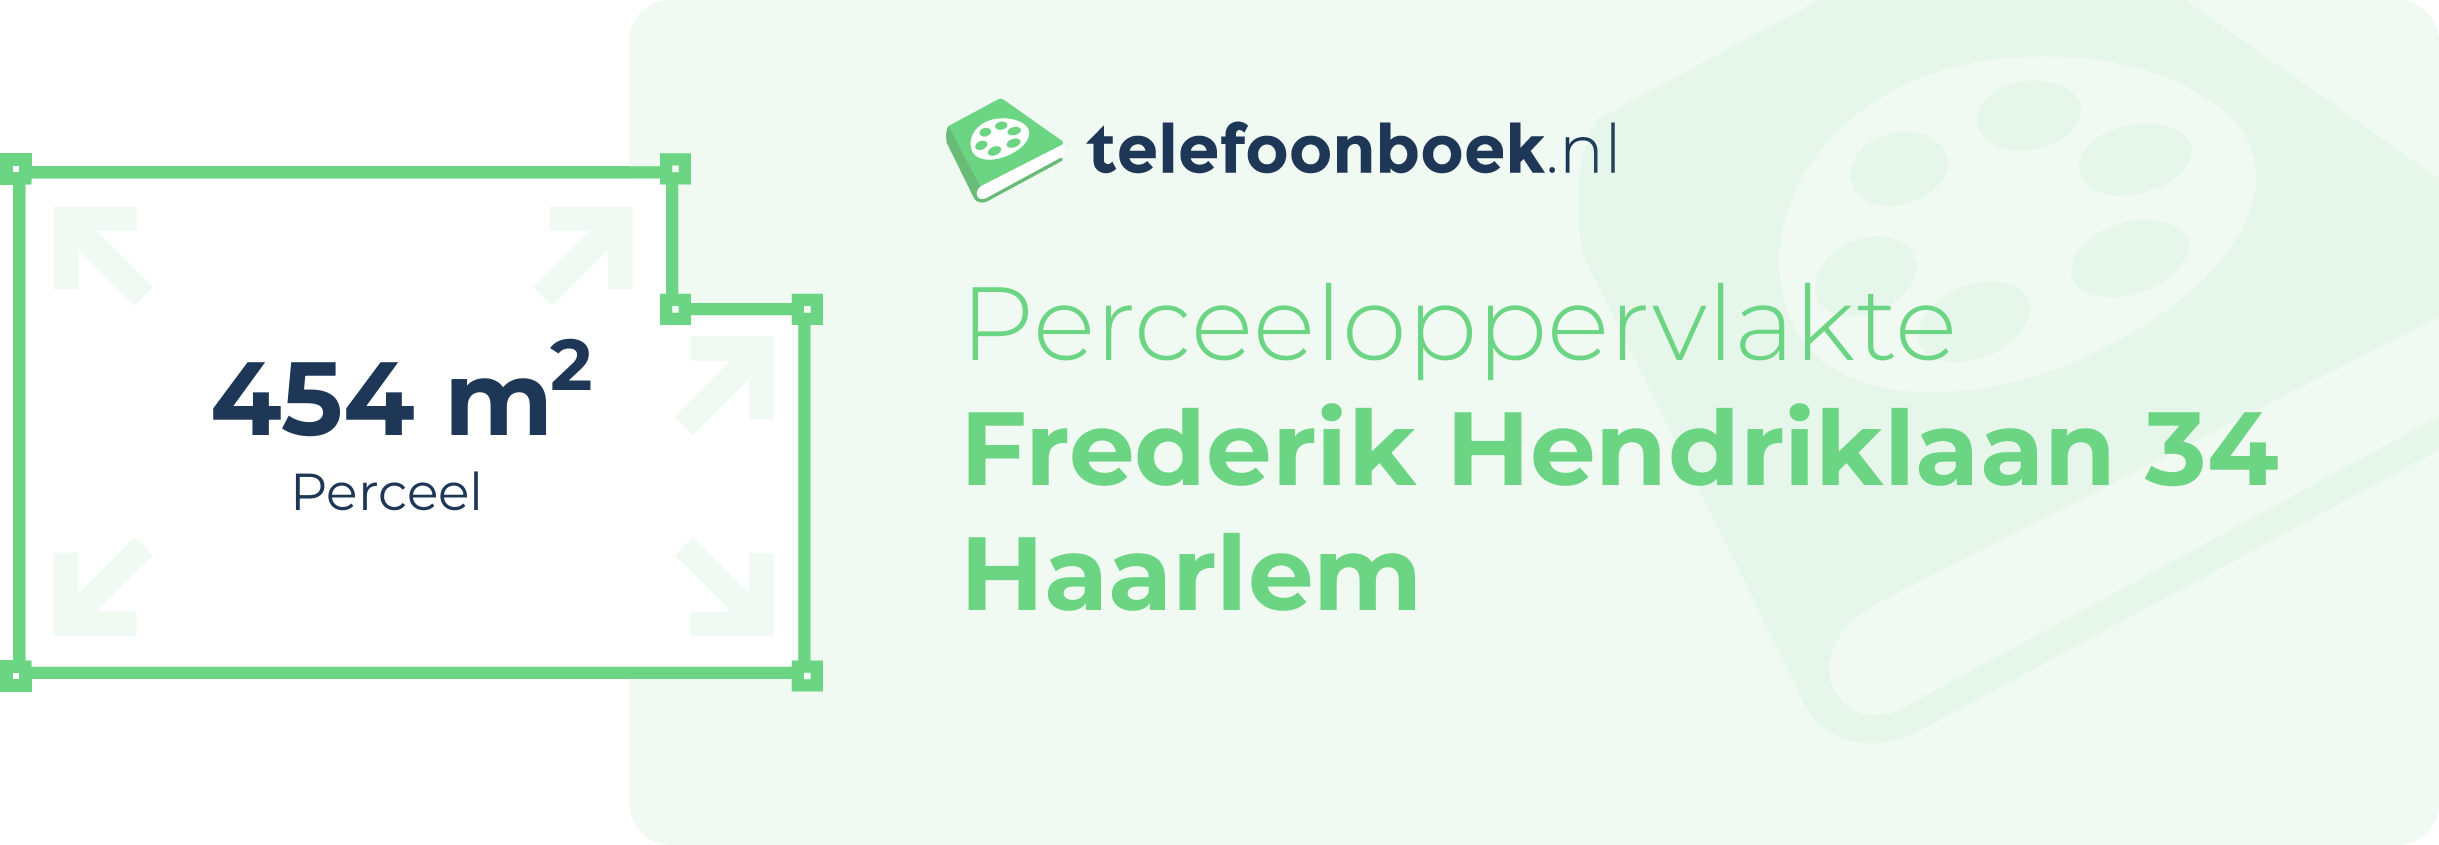 Perceeloppervlakte Frederik Hendriklaan 34 Haarlem